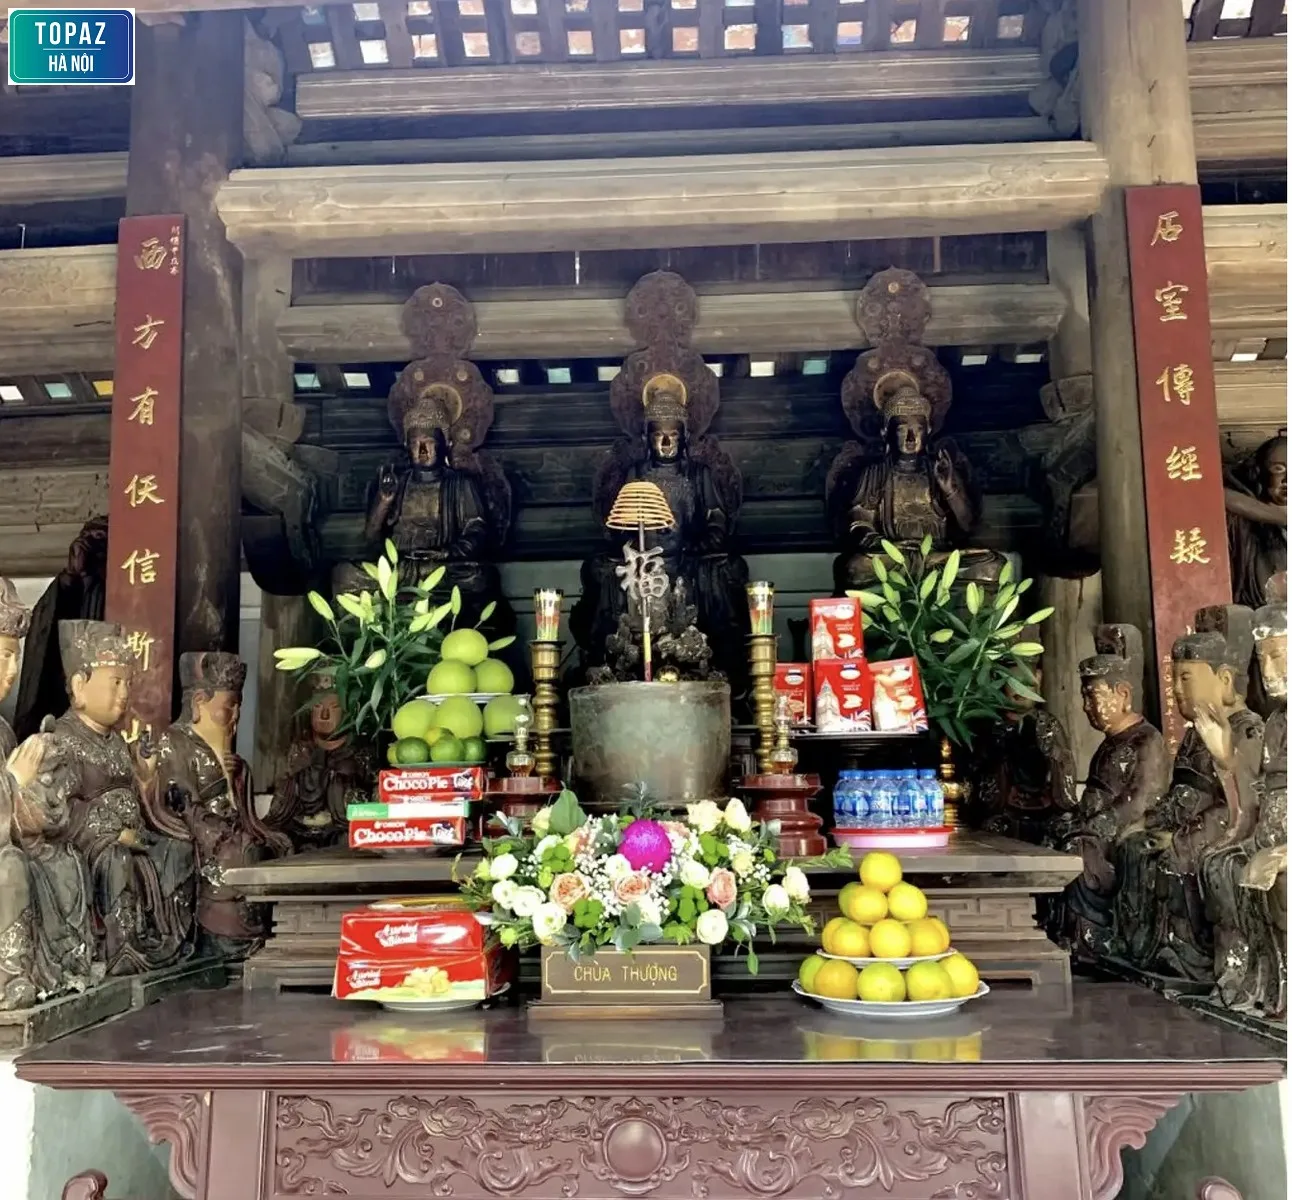 Hình ảnh chùa Thượng 